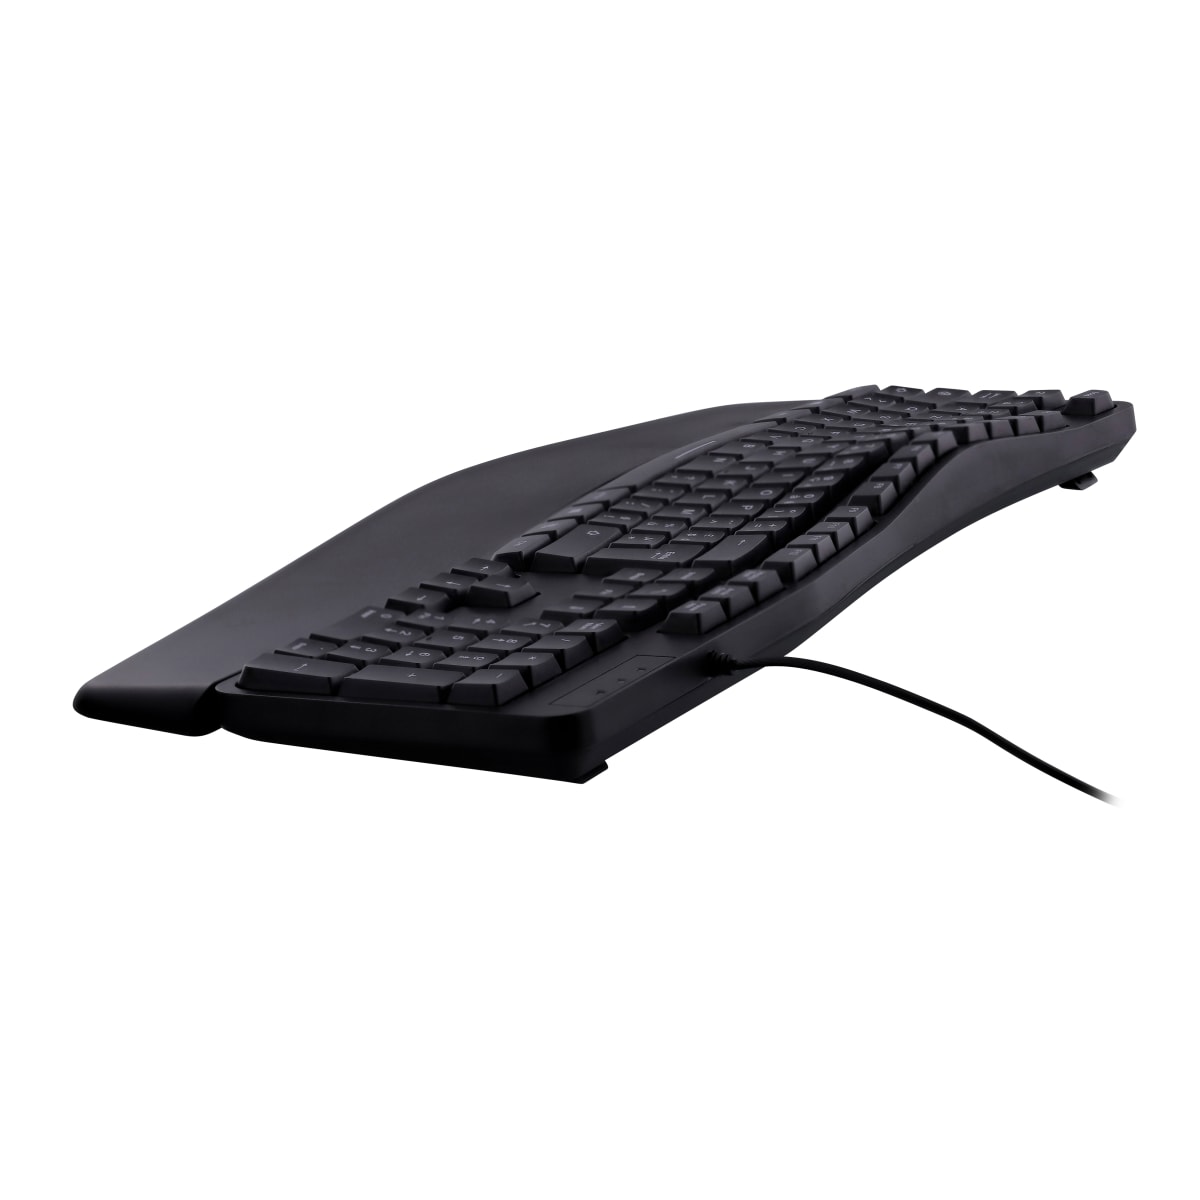 Support à clavier ergonomique - #EB01 - Bureau Plan